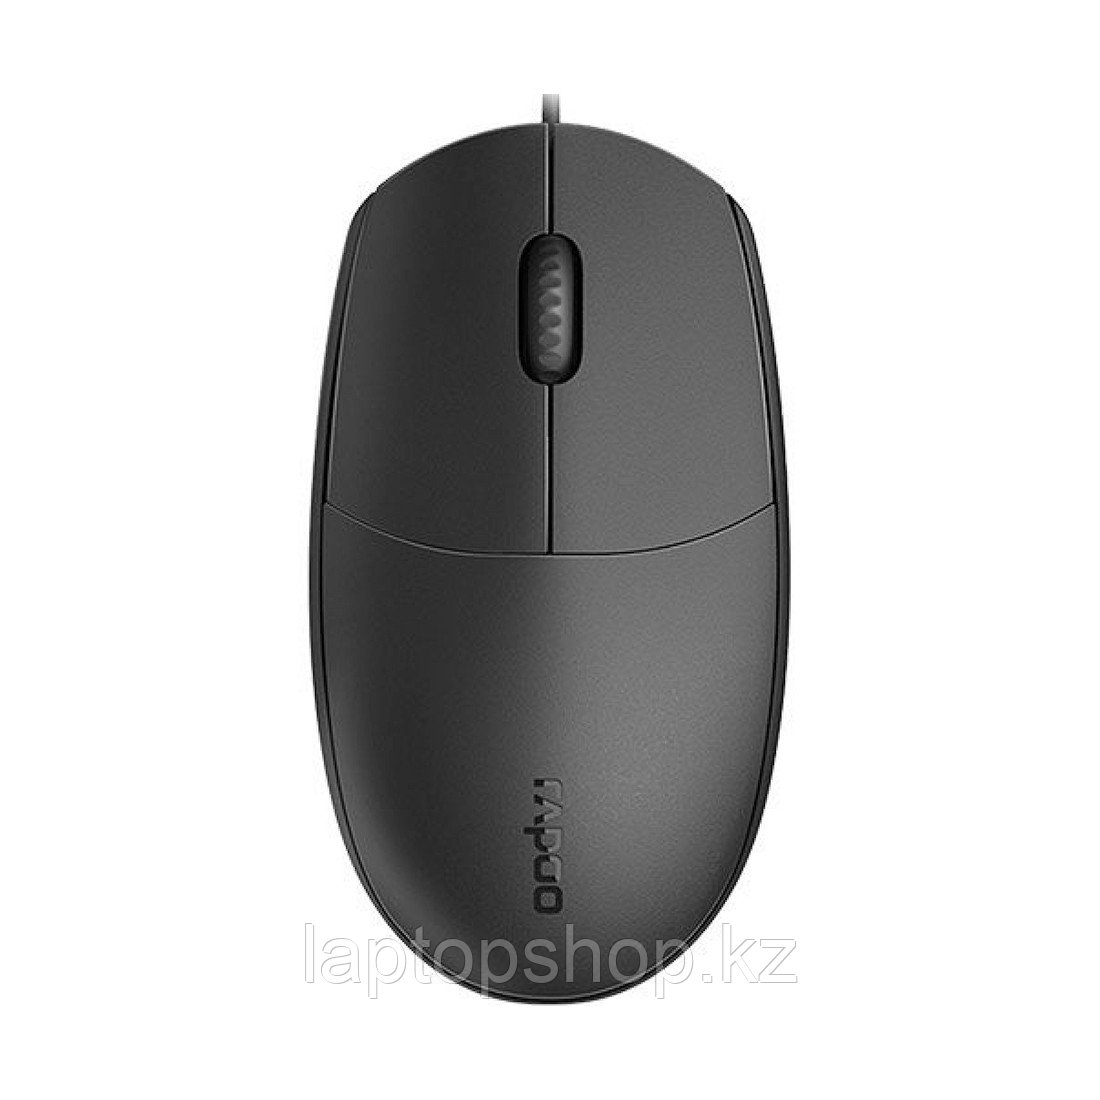 Mouse Rapoo N100, Оптическая, 1600dpi, USB, фото 1